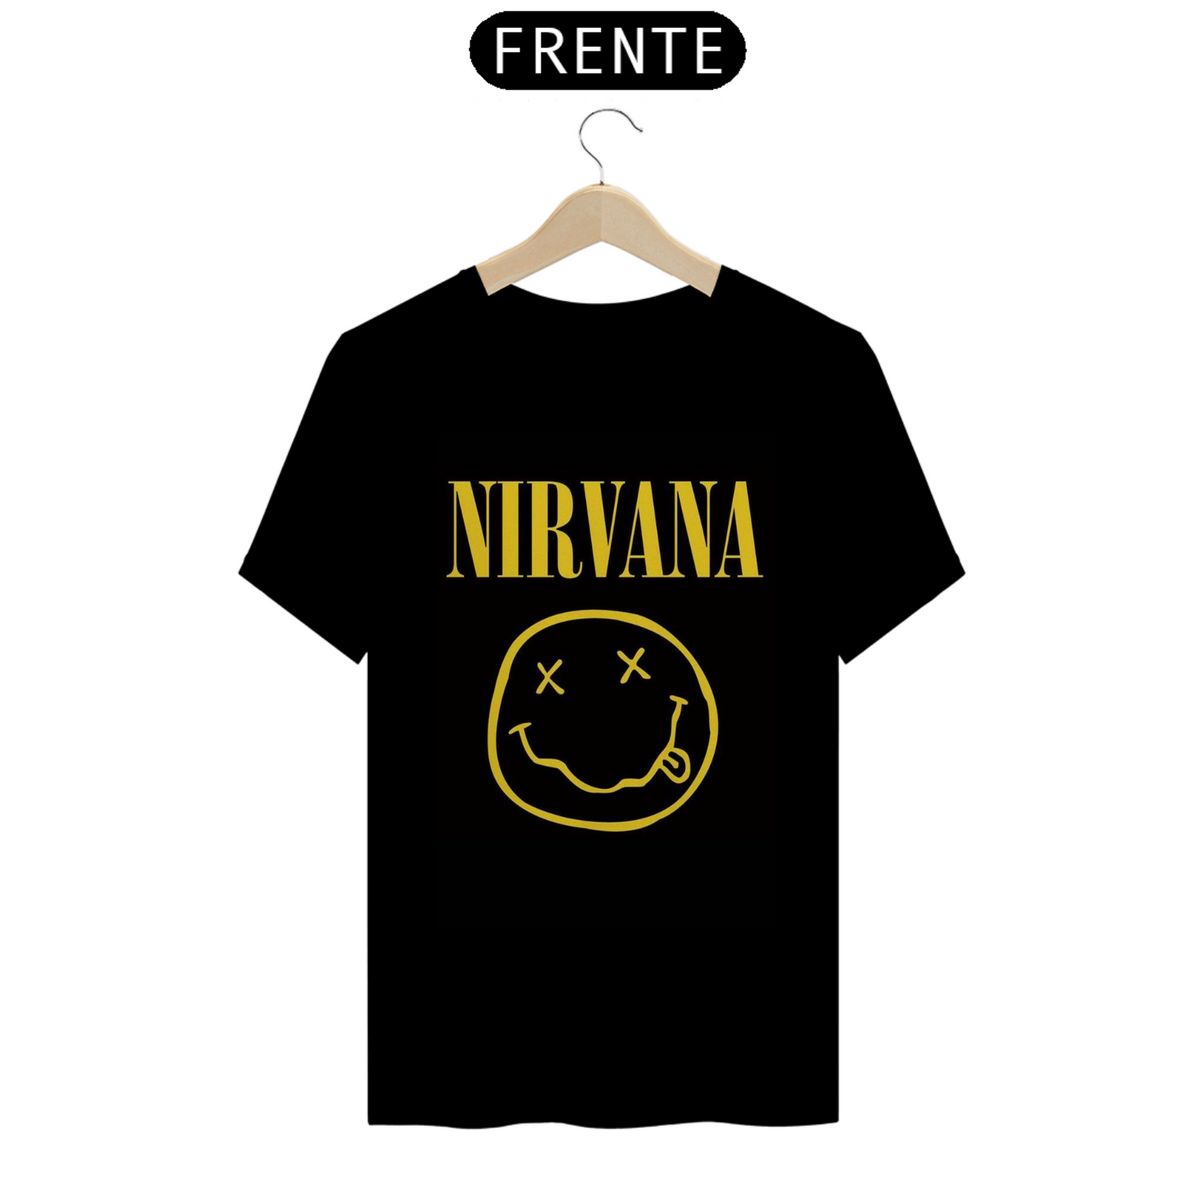 Nome do produto: camisa nirvana